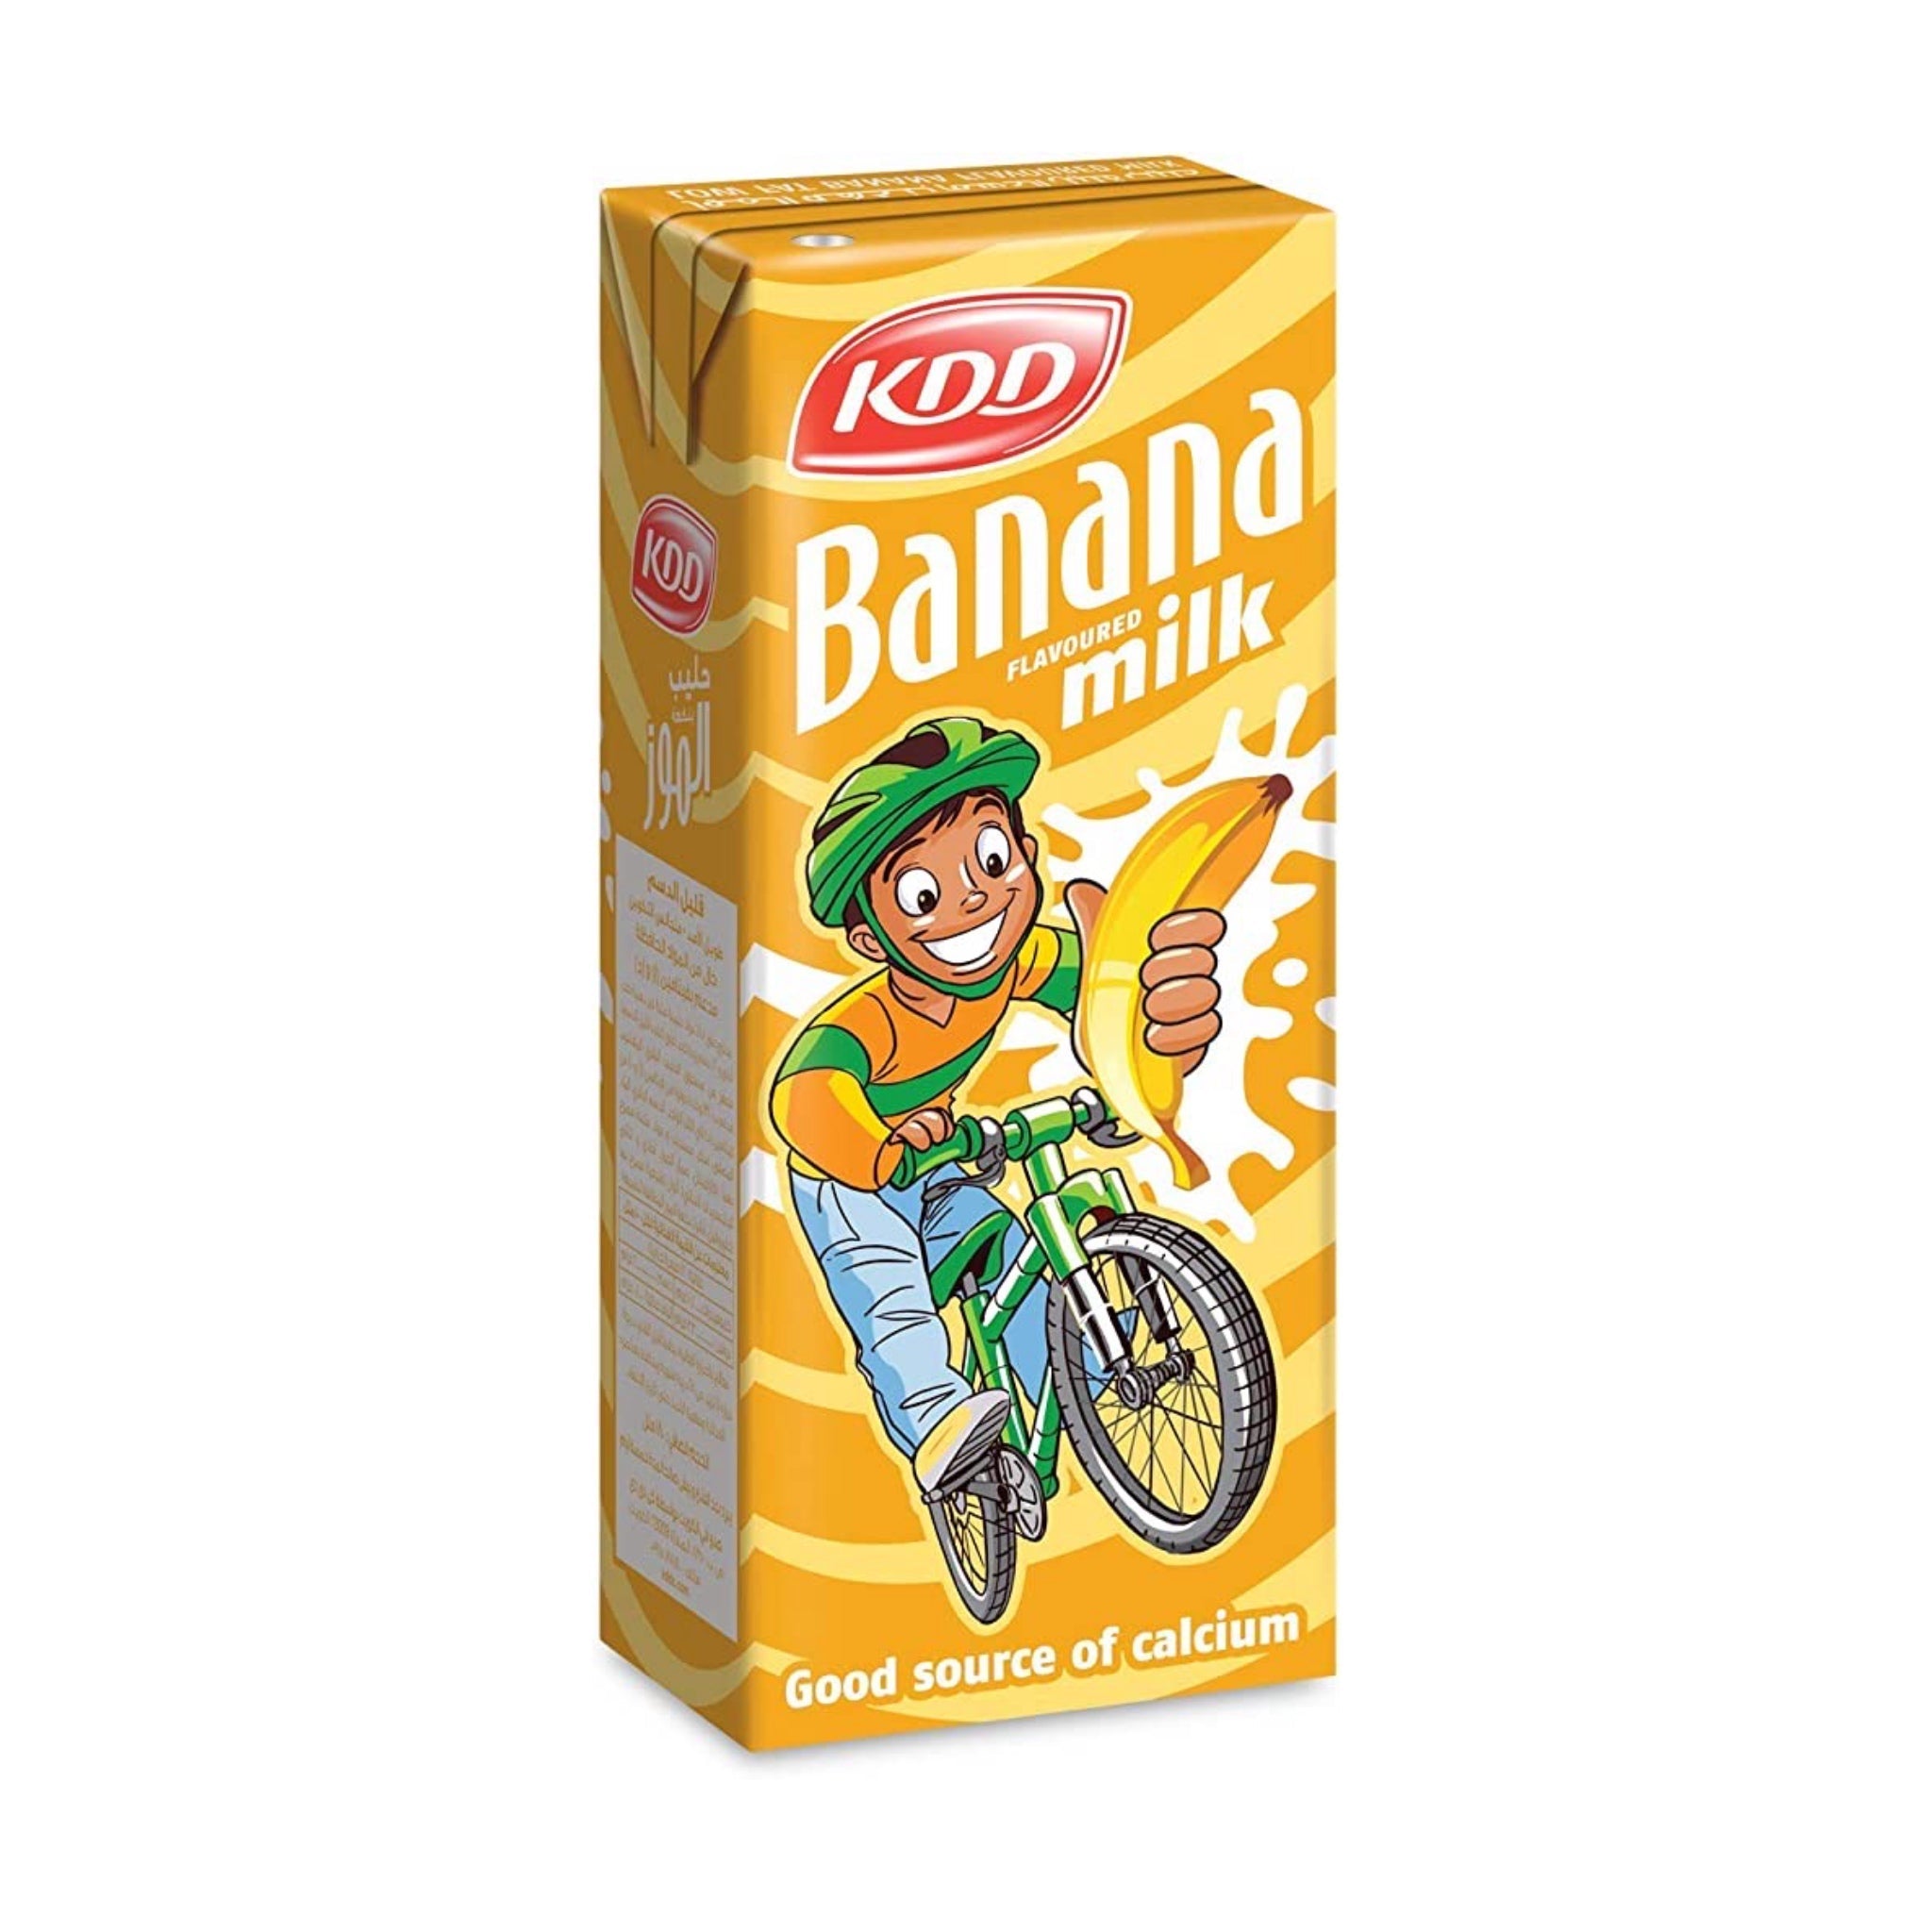 KDD Banana Milk